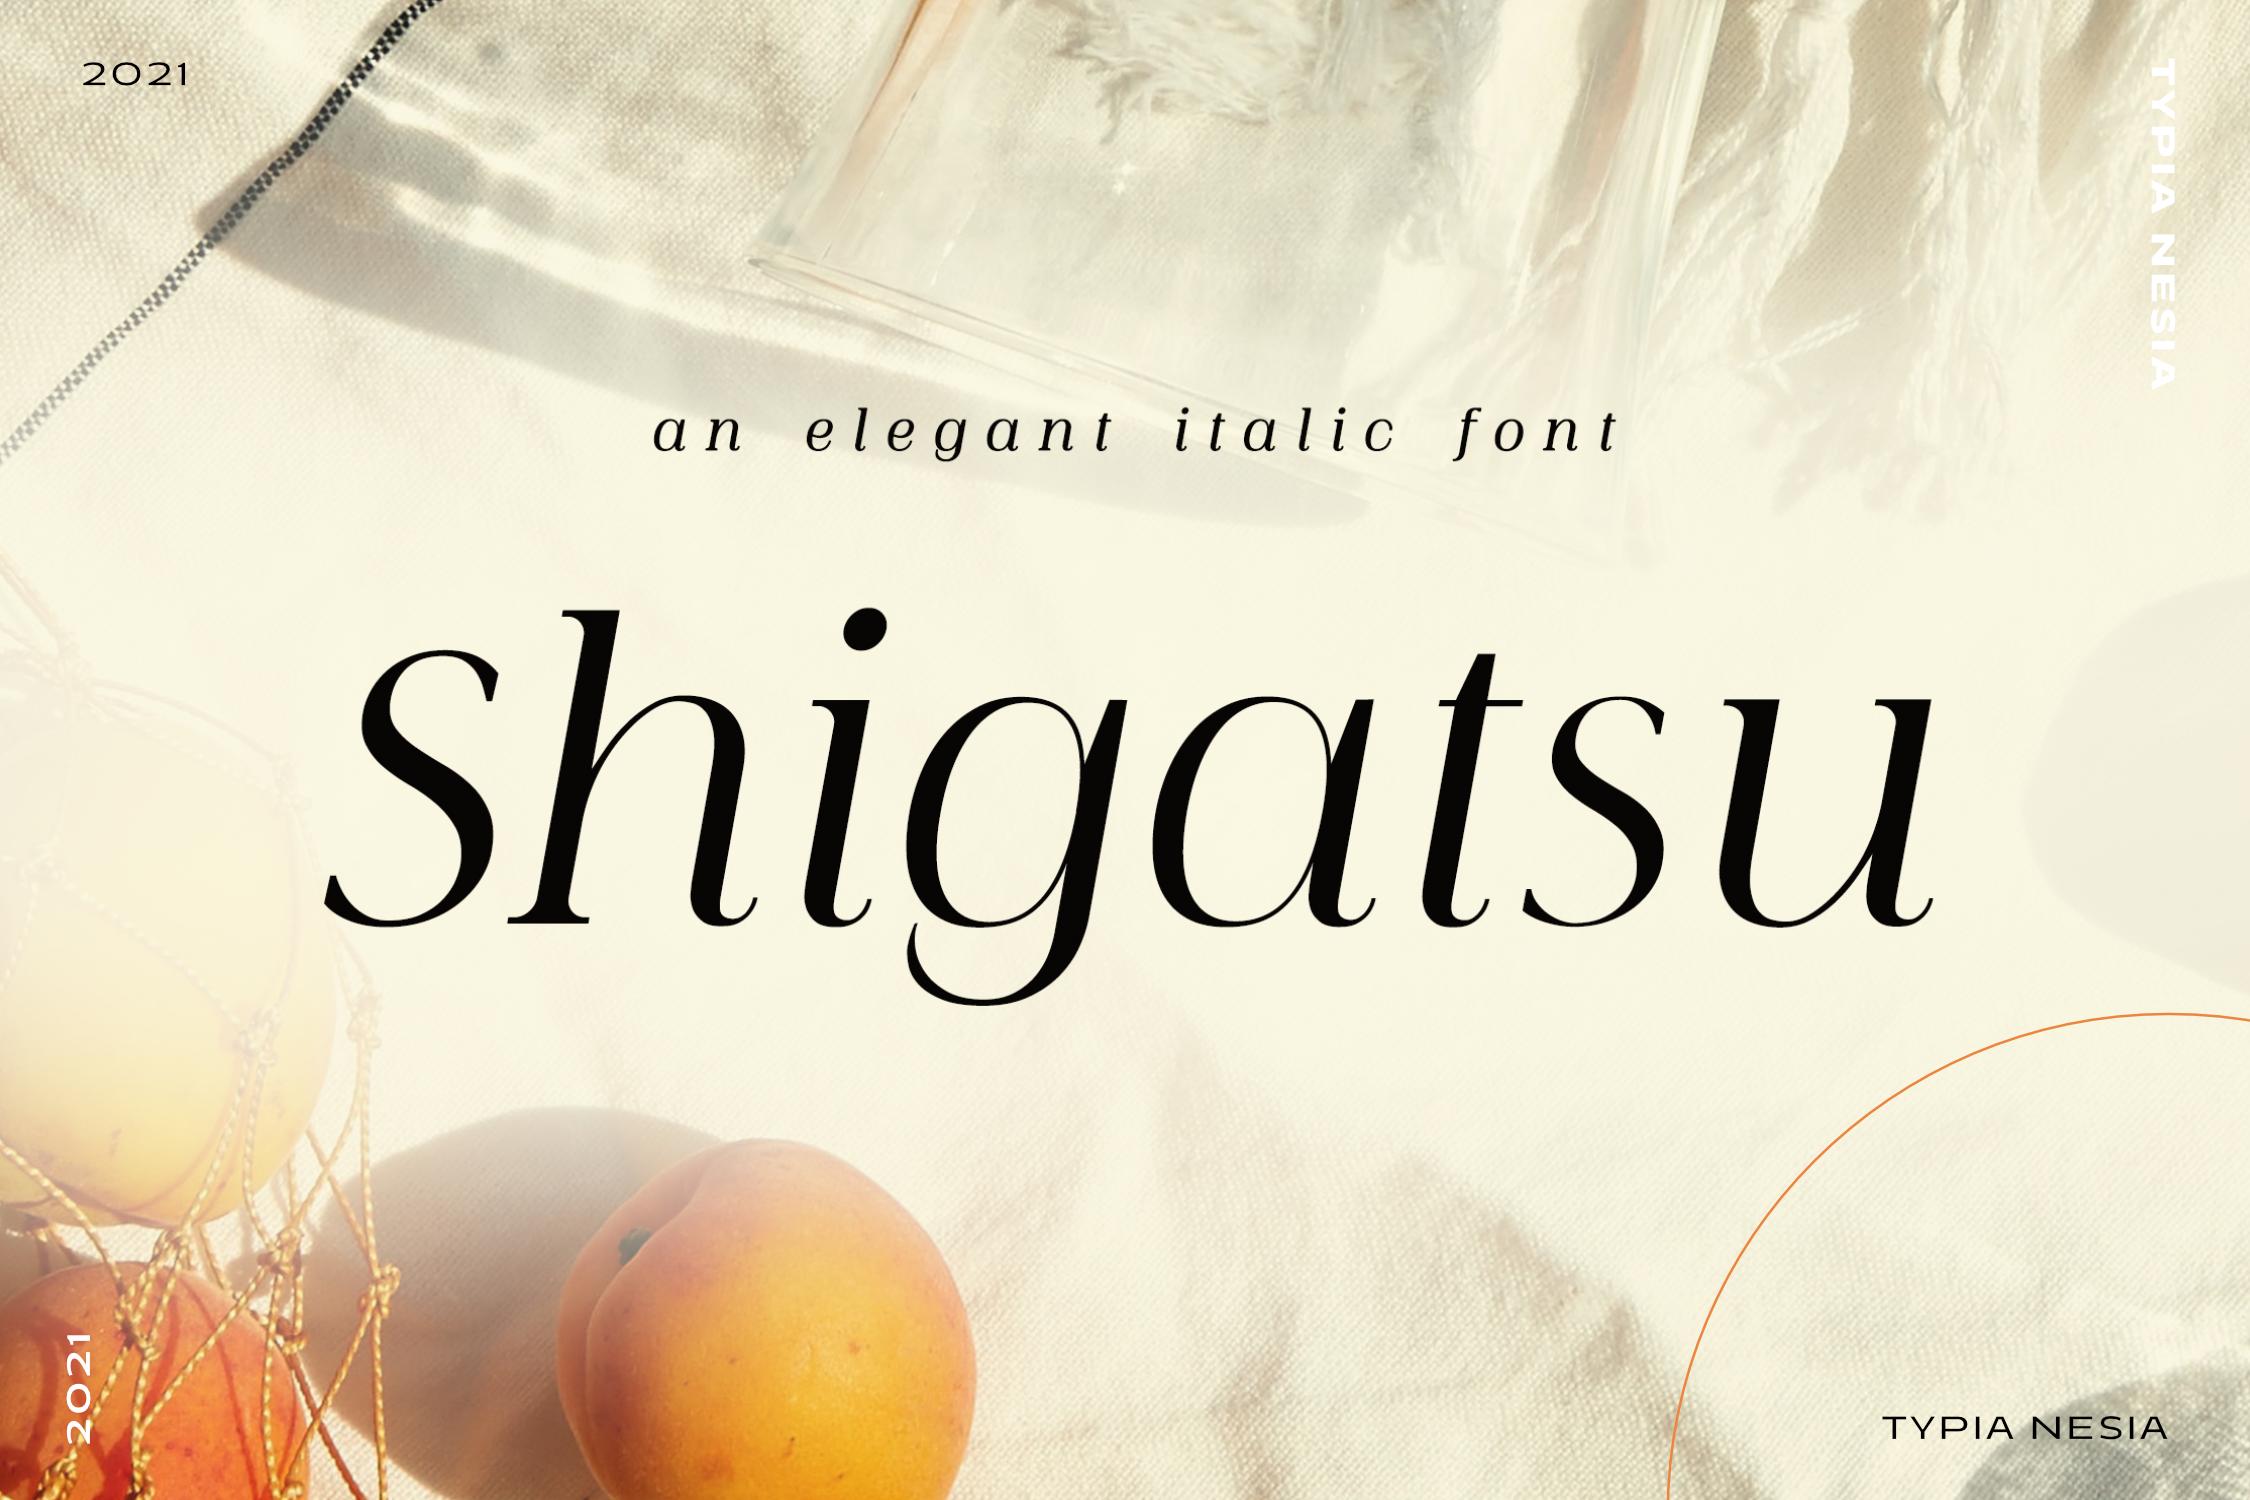 Shigatsu Font